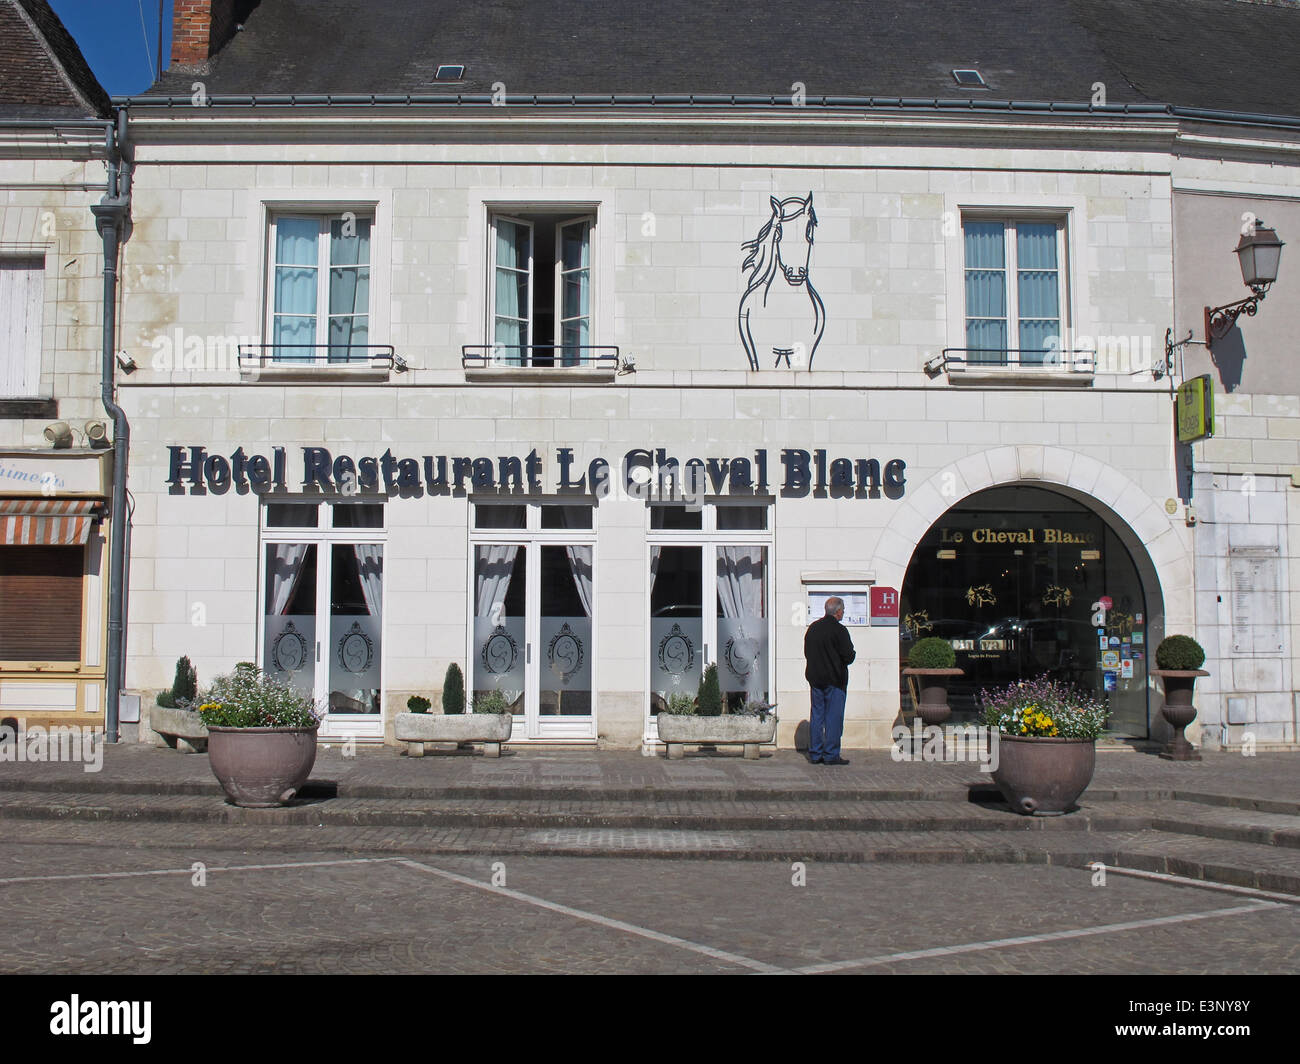 Auberge du Cheval Blanc - Visit Alsace